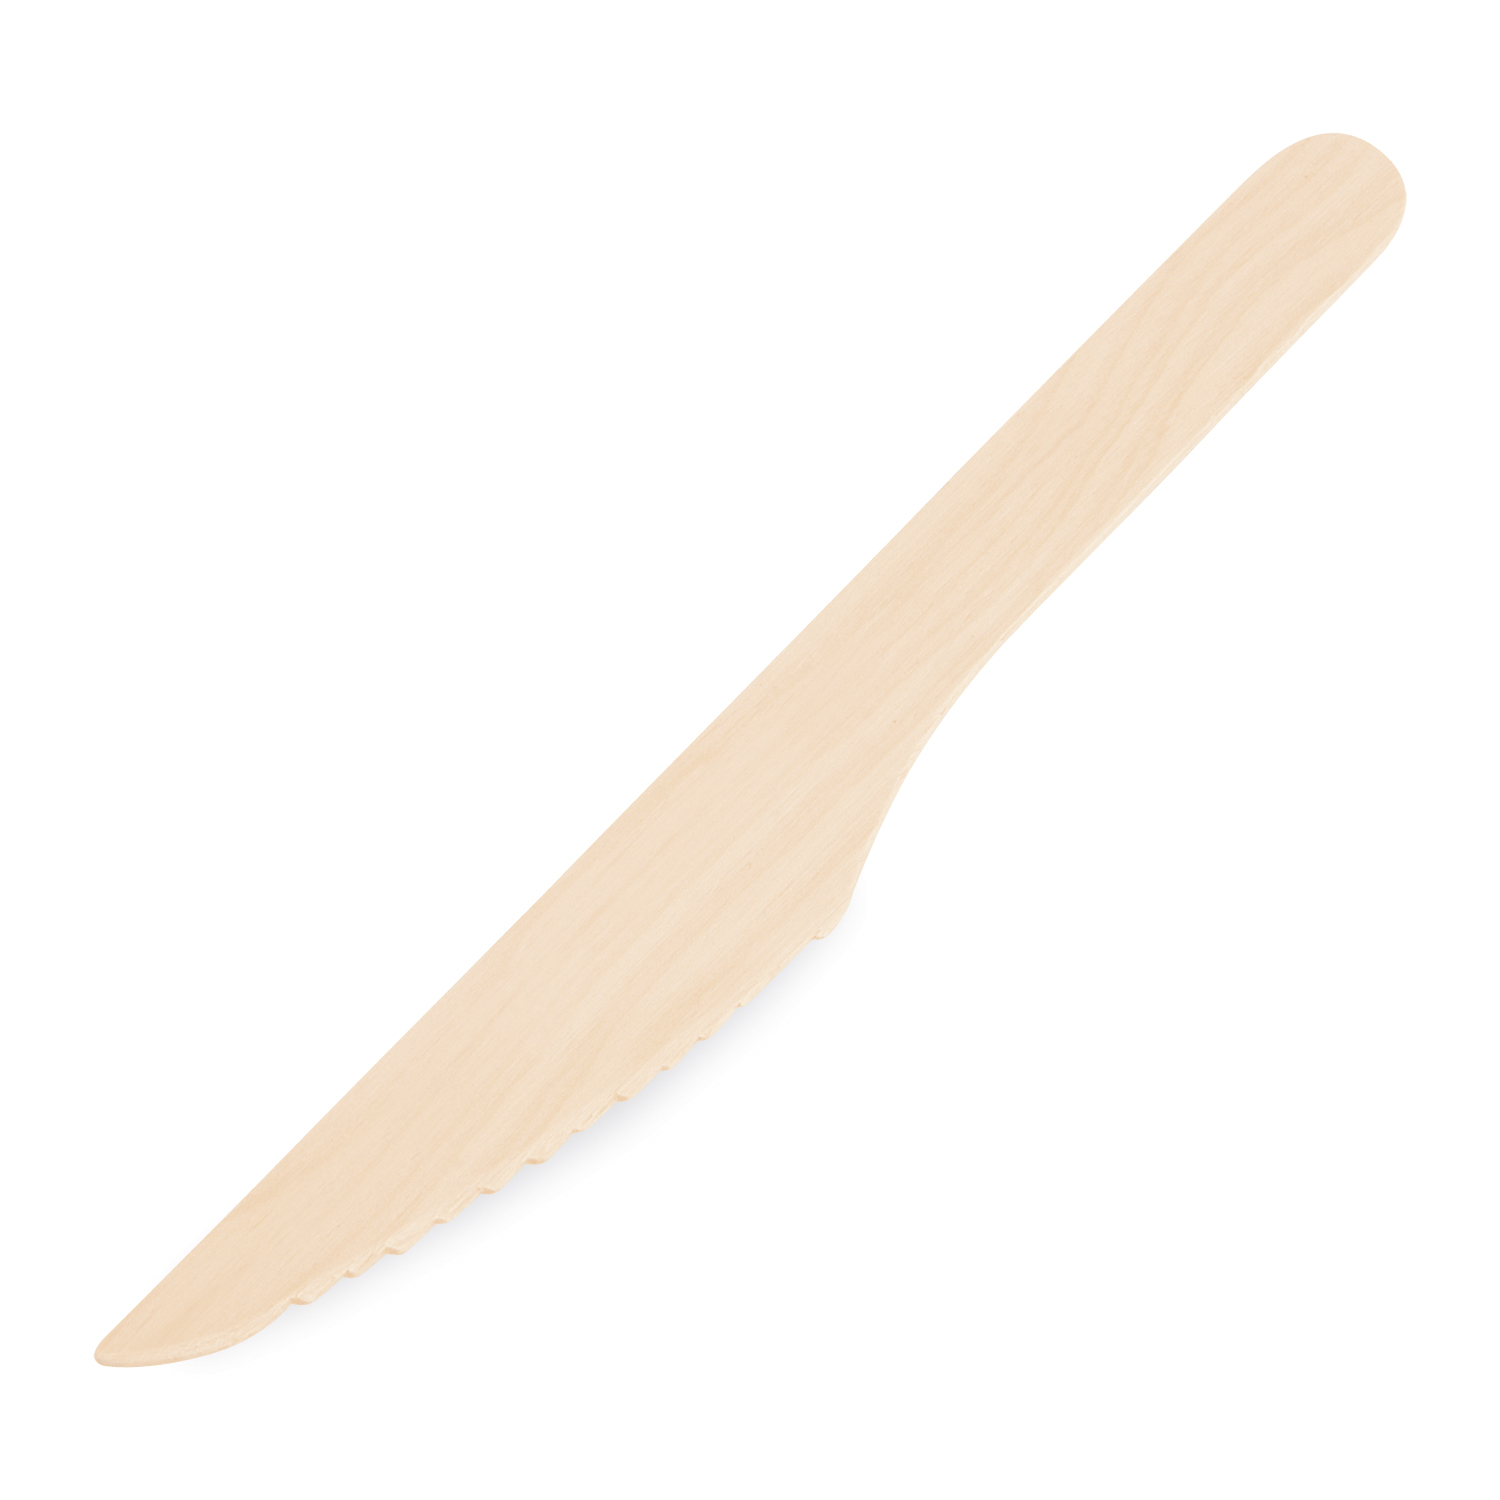 Messer aus Holz 16,5cm - 100 Stück